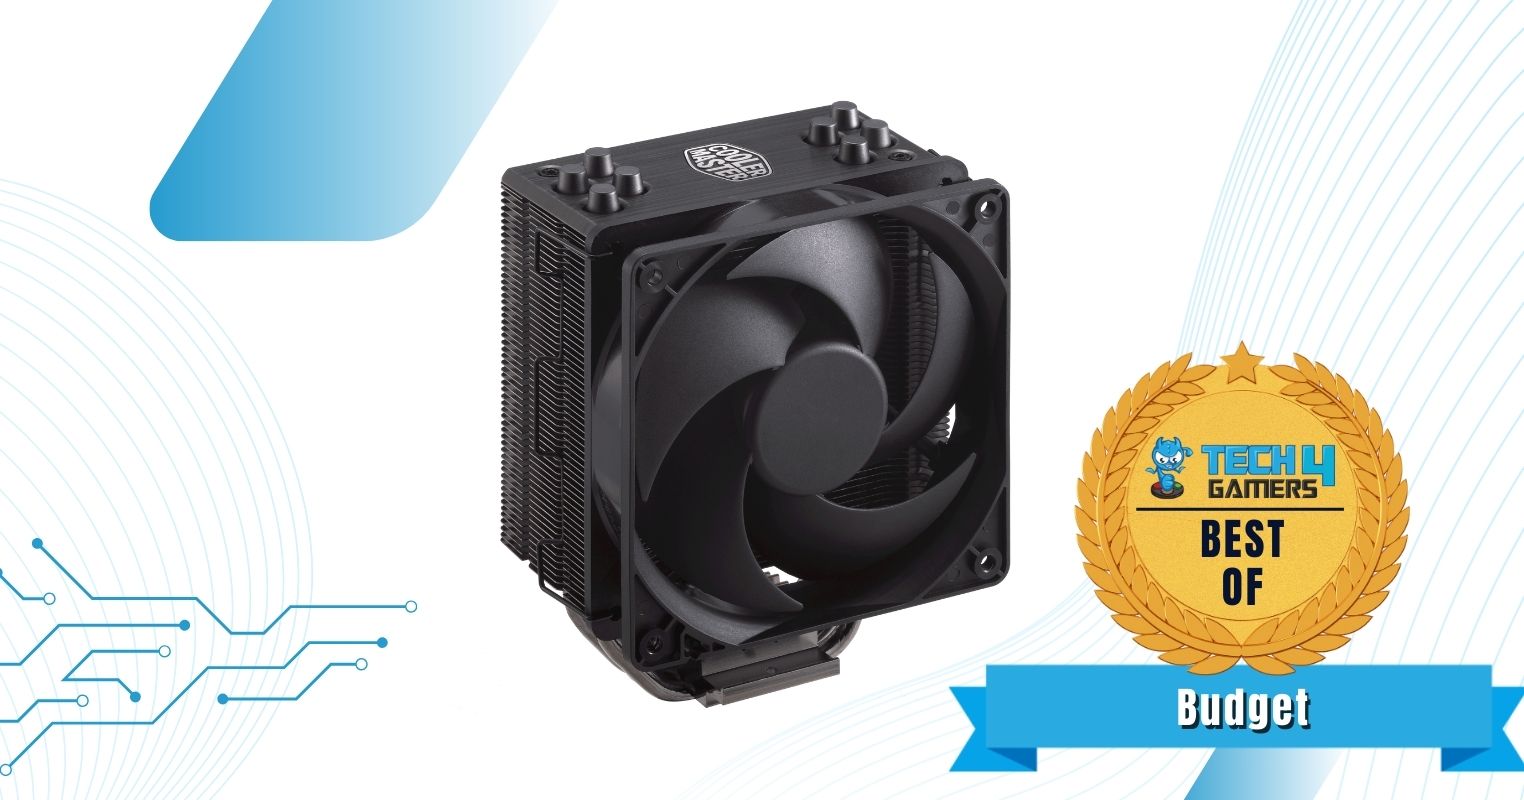 Best Budget CPU Cooler For Ryzen 7 7700X - Cooler Master Hyper 212 Black Edition